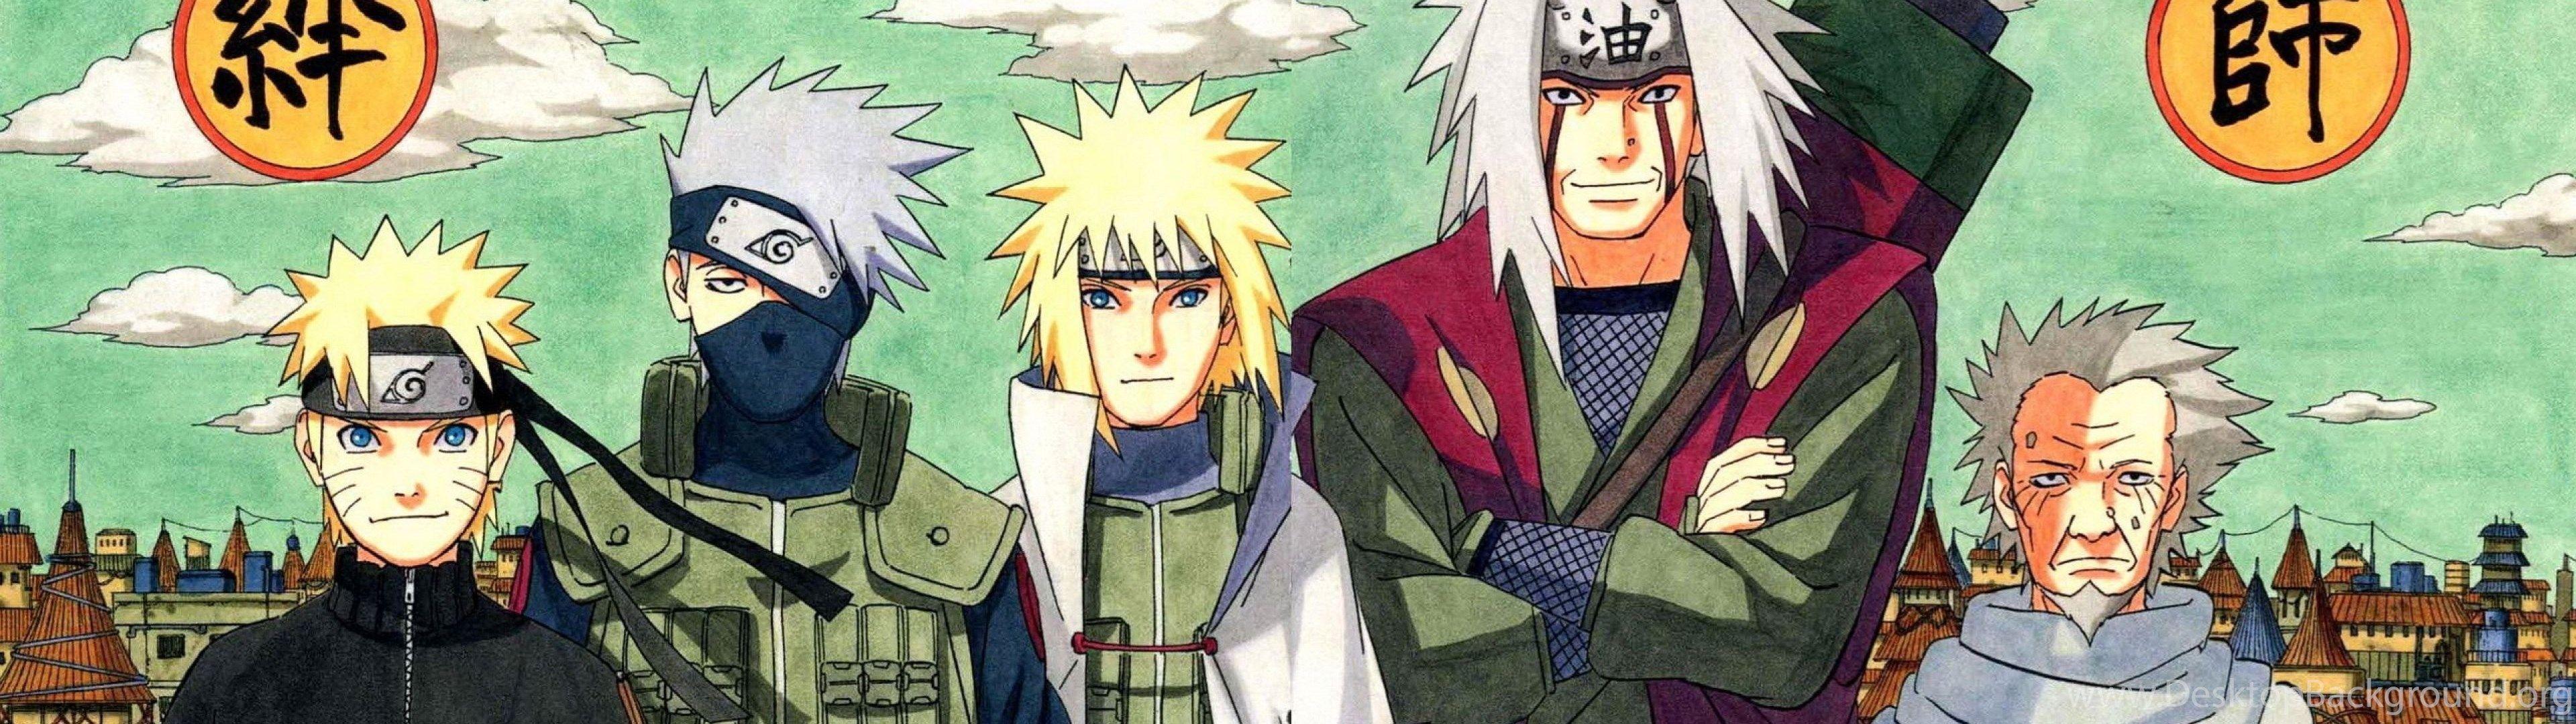 Naruto and Sasuke Dual Screen Wallpapers - Top Free Naruto and Sasuke